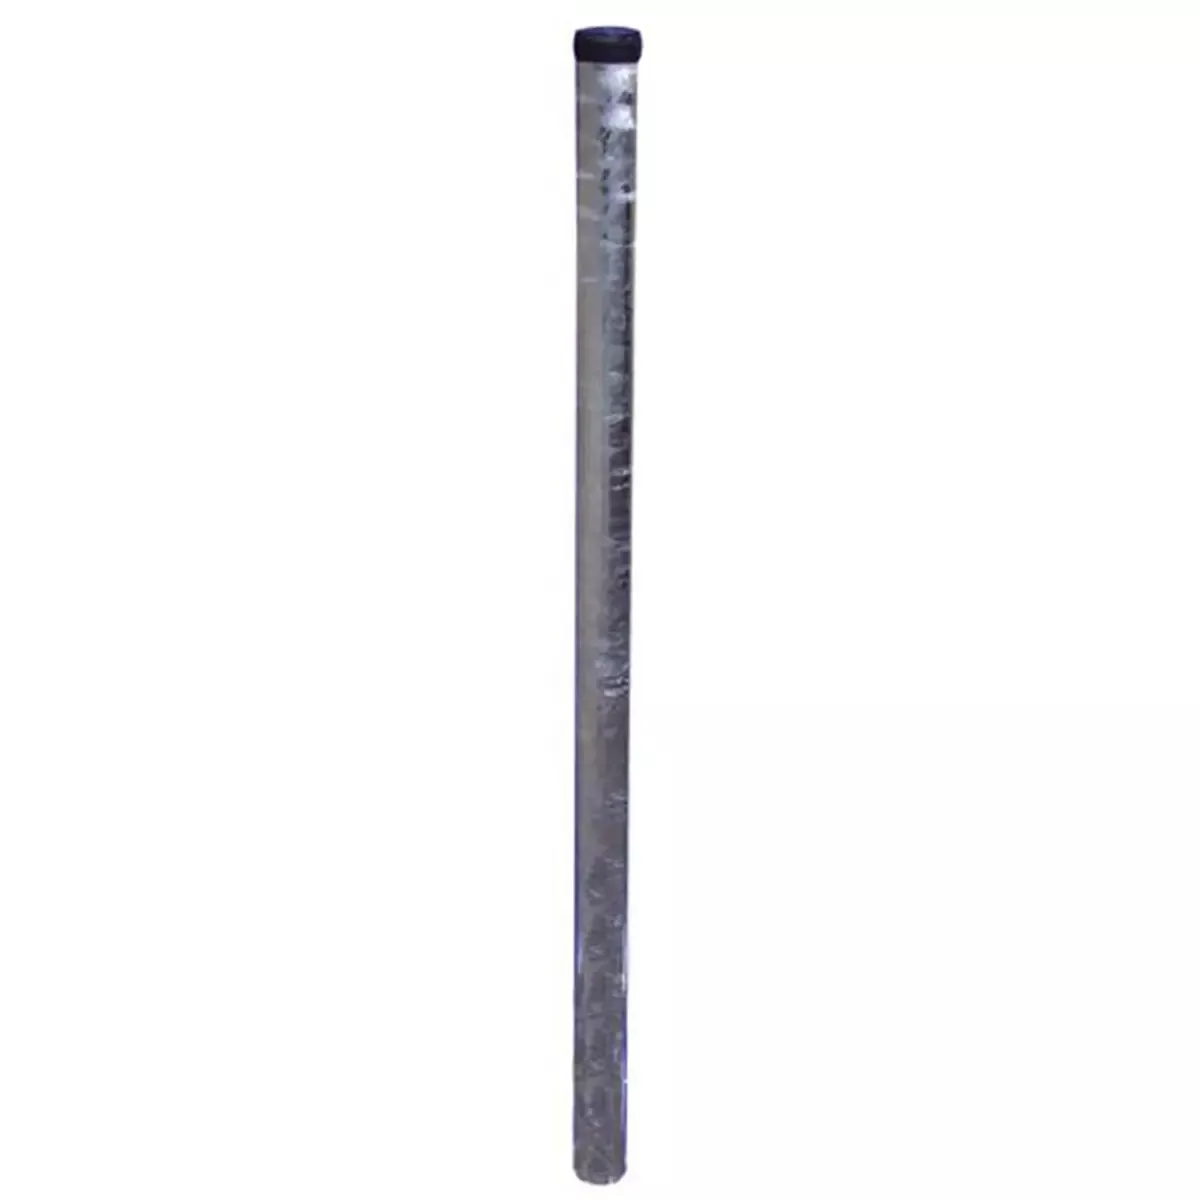 Rohrpfosten aus Stahl, ø 60 mm, Wandstärke 2,9 mm, Länge 3.250 mm, nach IVZ S232